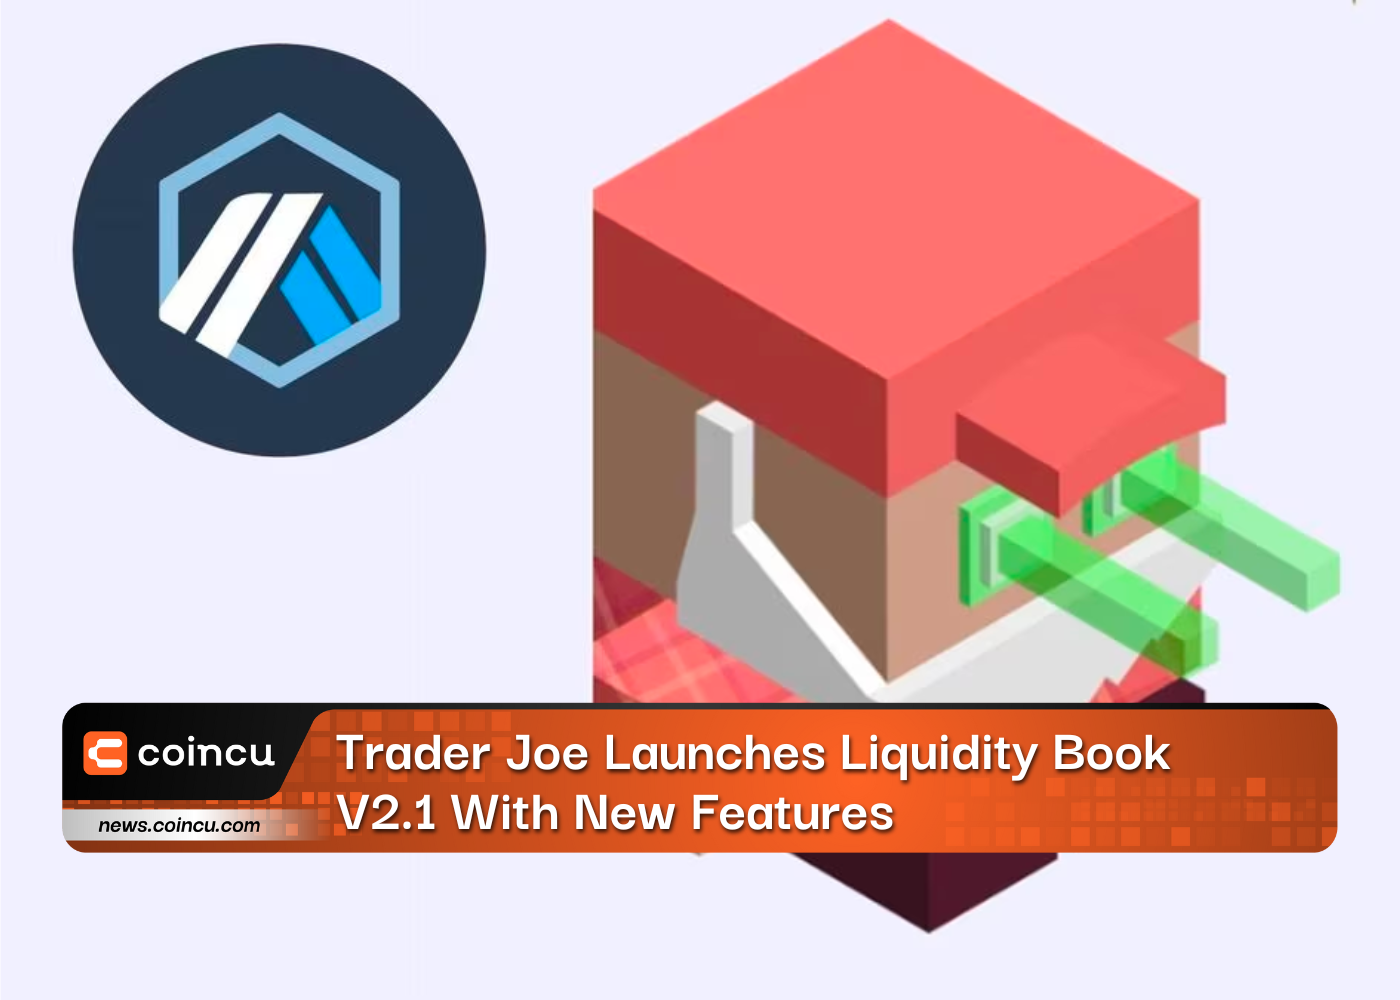 Trader Joe bringt Liquidity Book V2.1 mit neuen Funktionen auf den Markt